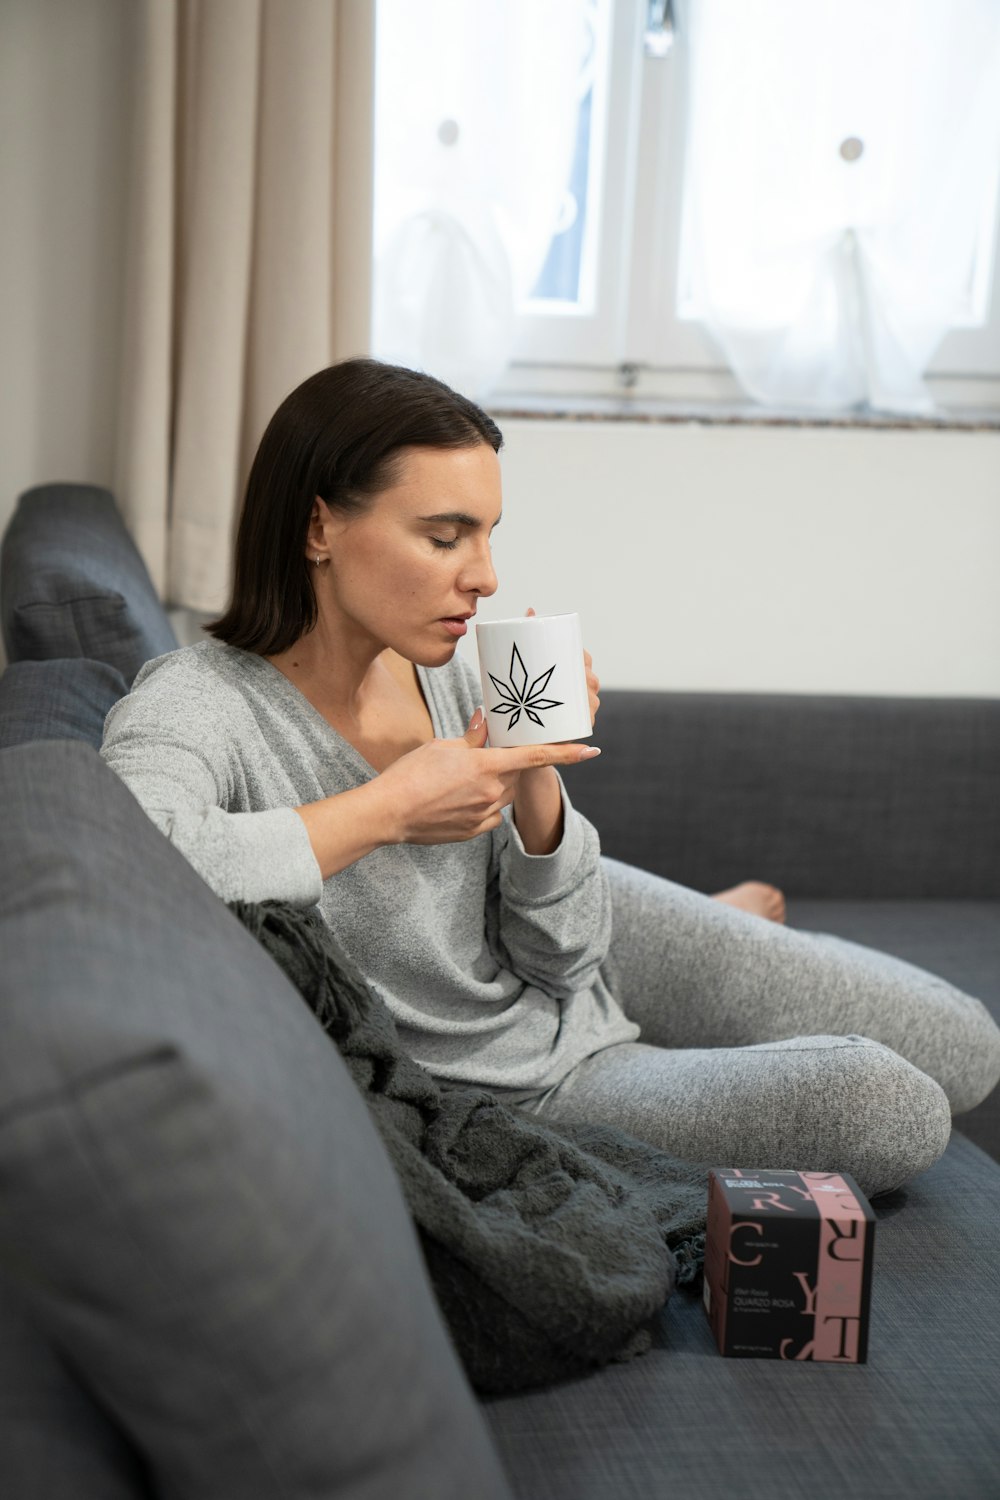 Eine Frau sitzt auf einer Couch und hält eine Kaffeetasse in der Hand